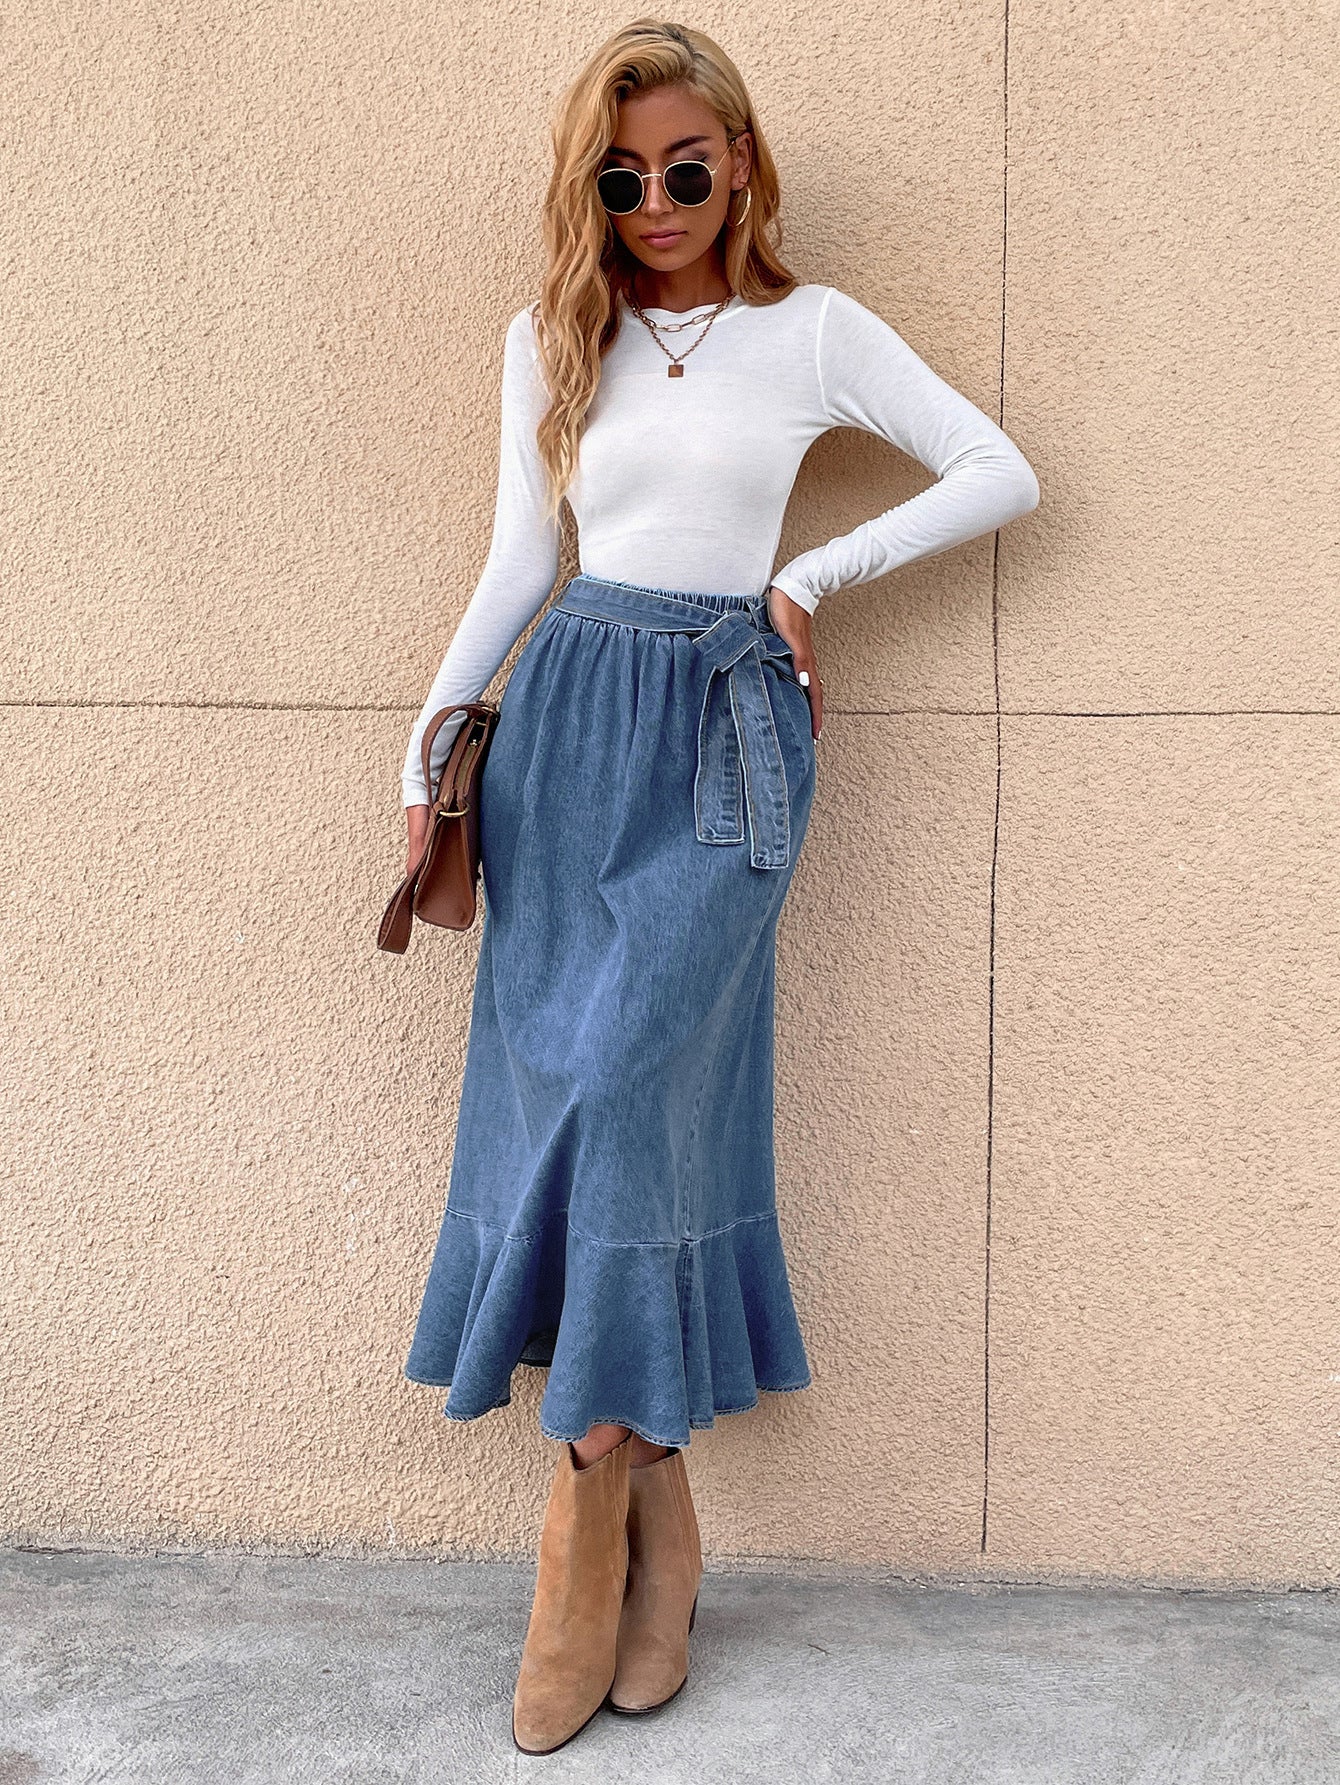 Blue Ruffle Skirt Denim Mid Length